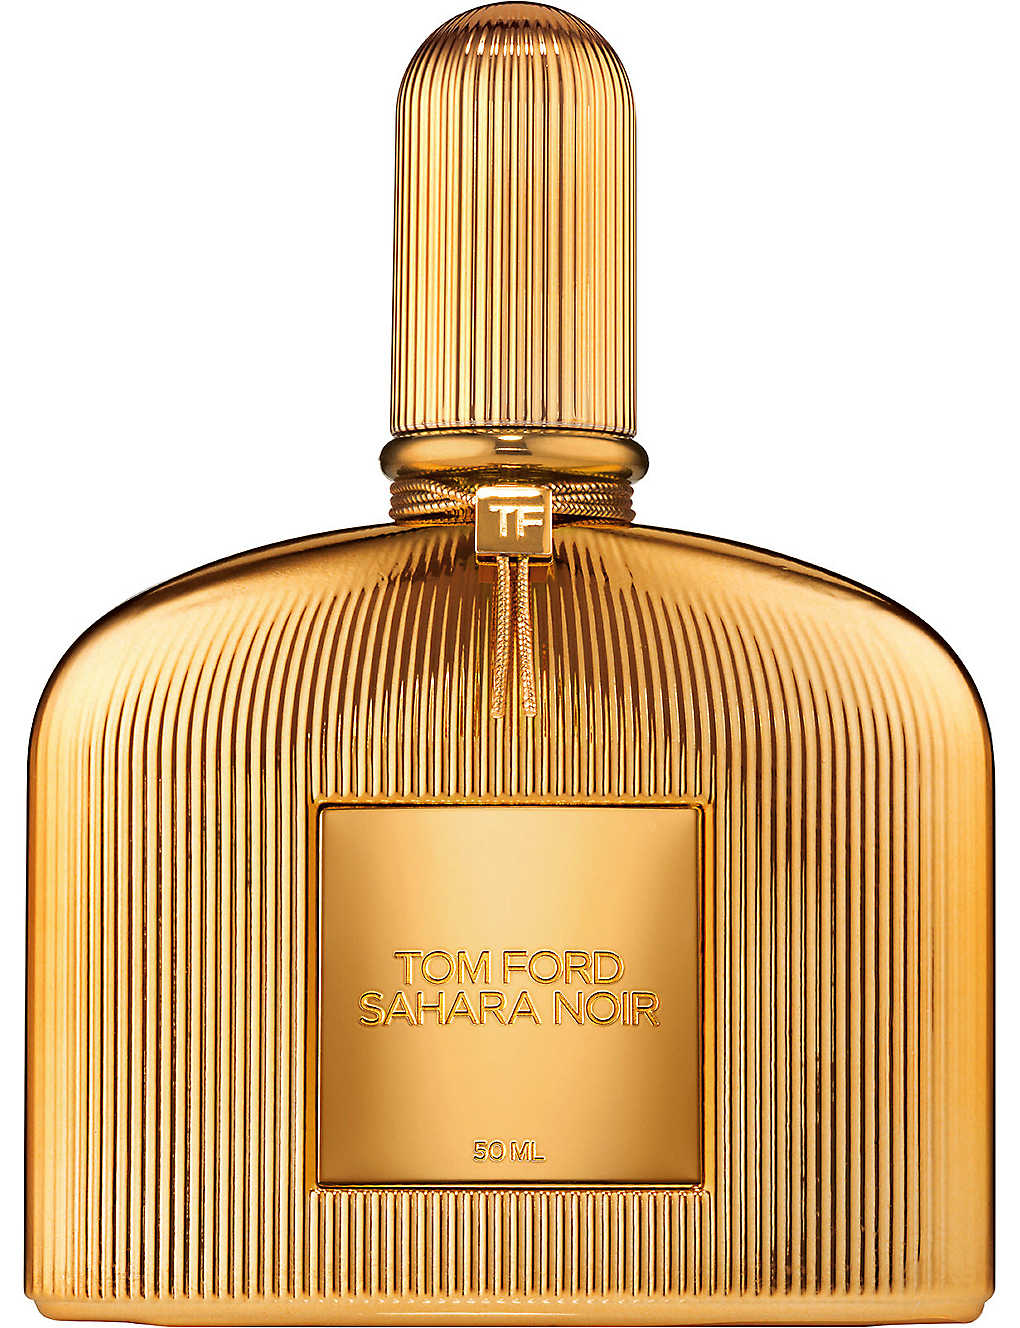 TOM FORD - Sahara Noir eau de parfum spray 50ml | Selfridges.com